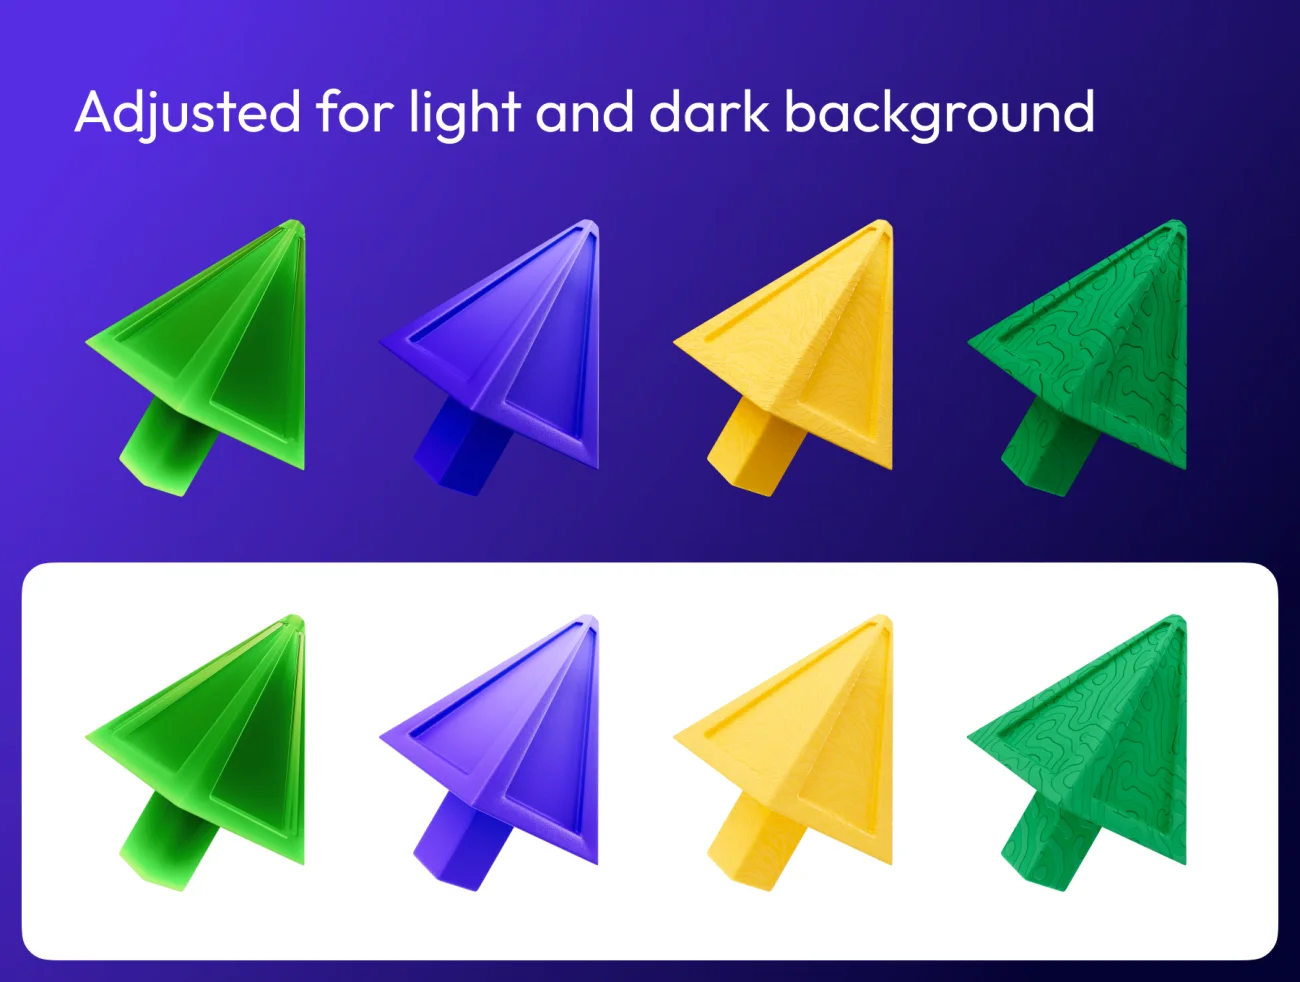 56款3D箭头模型4种形状7种材质 3D arrows, 4 shapes, 7 materials .png .figma .c4d .obj-3D/图标-到位啦UI